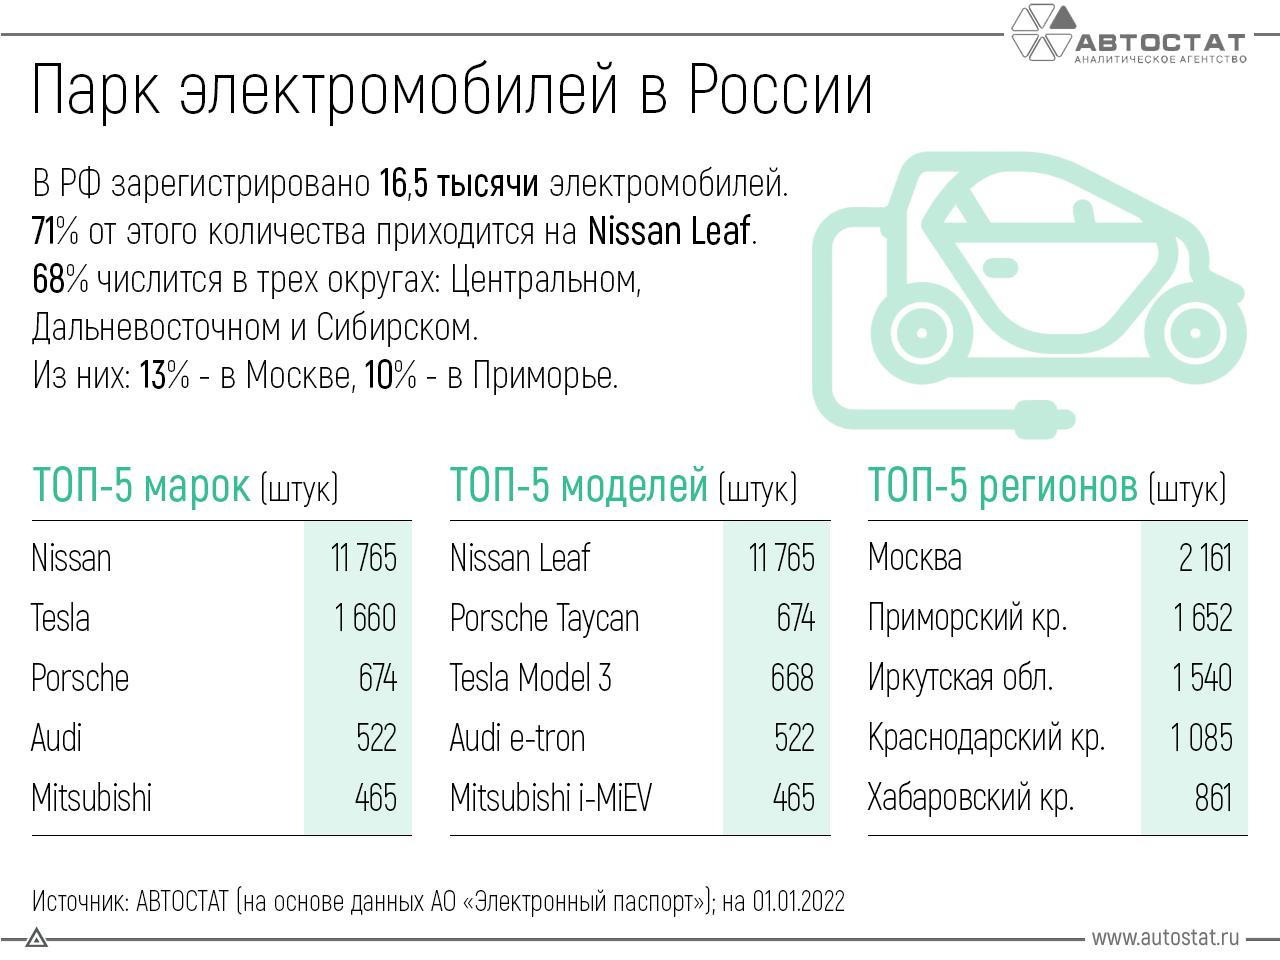 Количество электромобилей в РФ на начало 2022 года